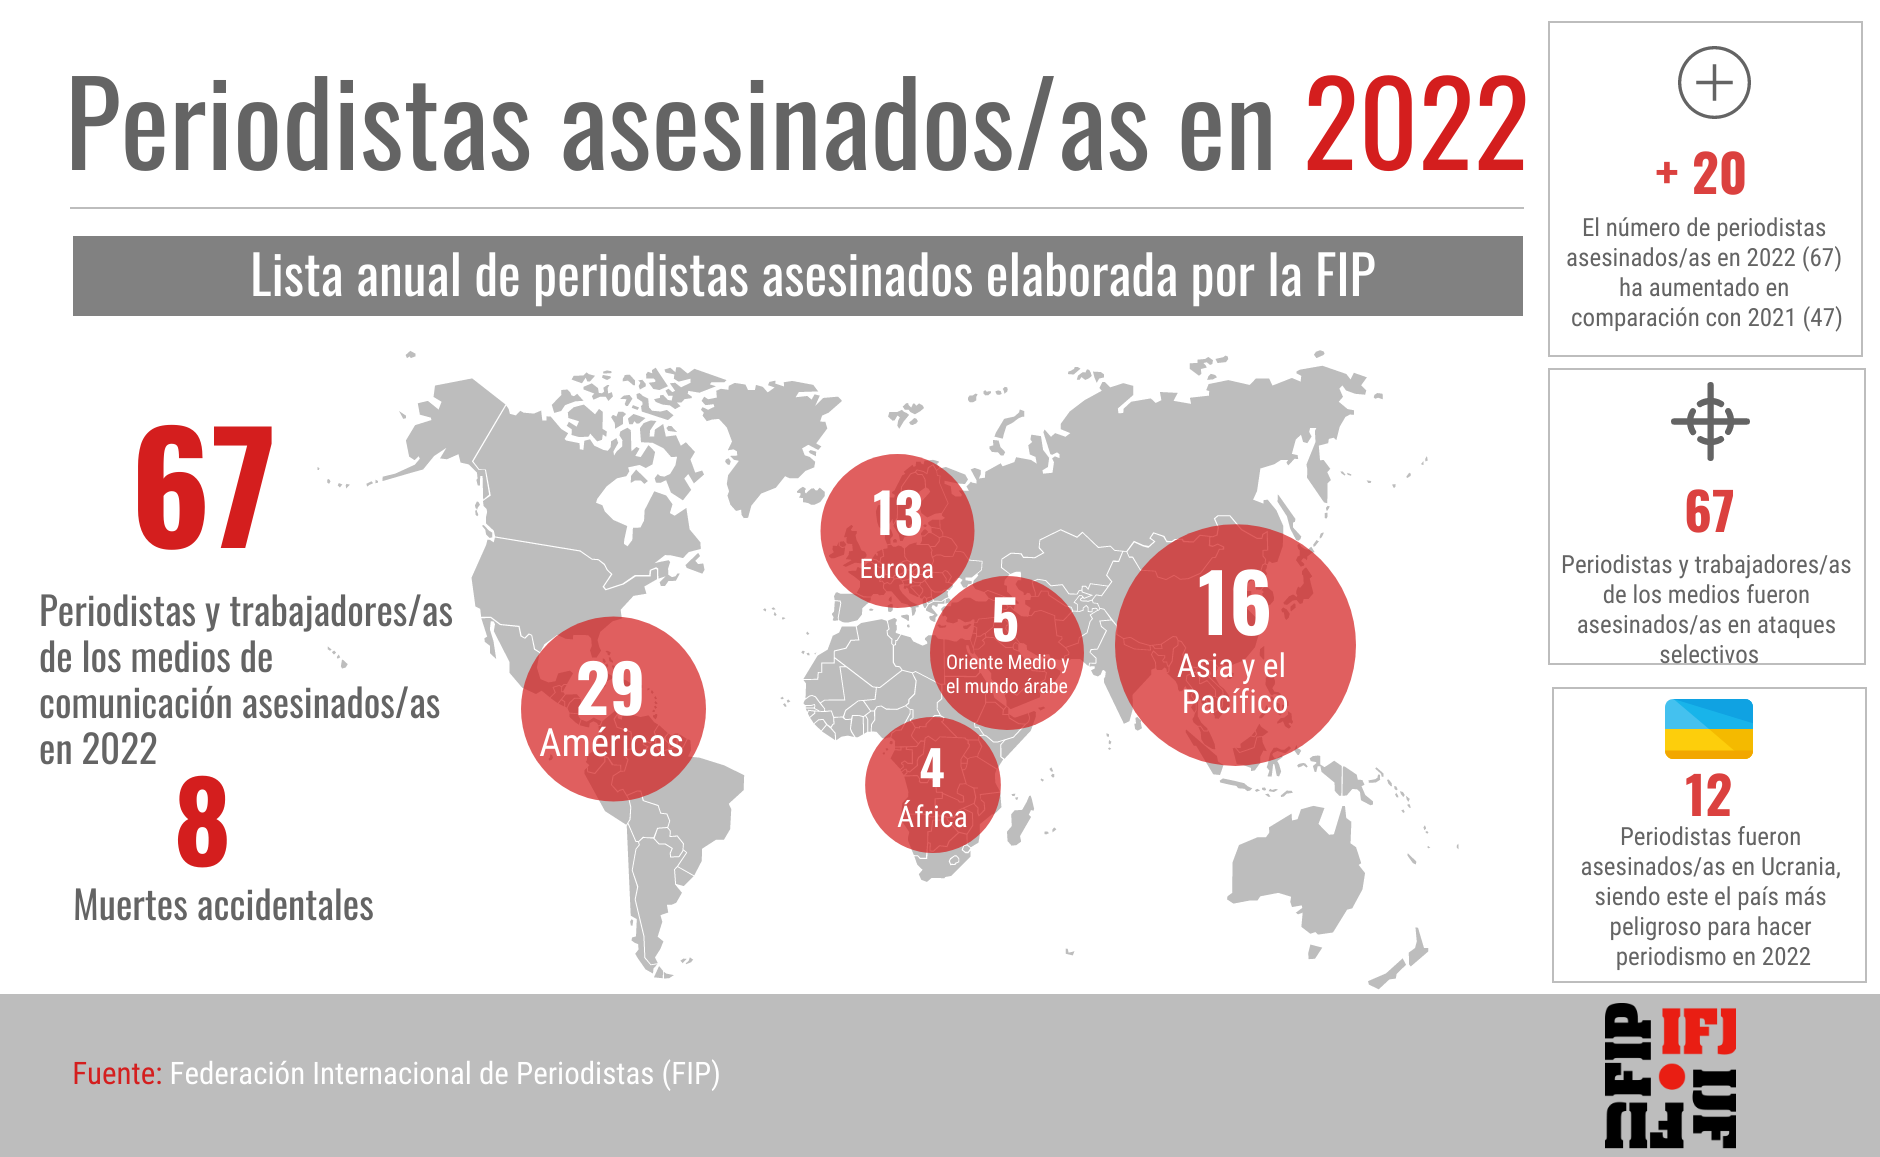 67 periodistas asesinados/as en lo que va de 2022: la FIP exige medidas inmediatas